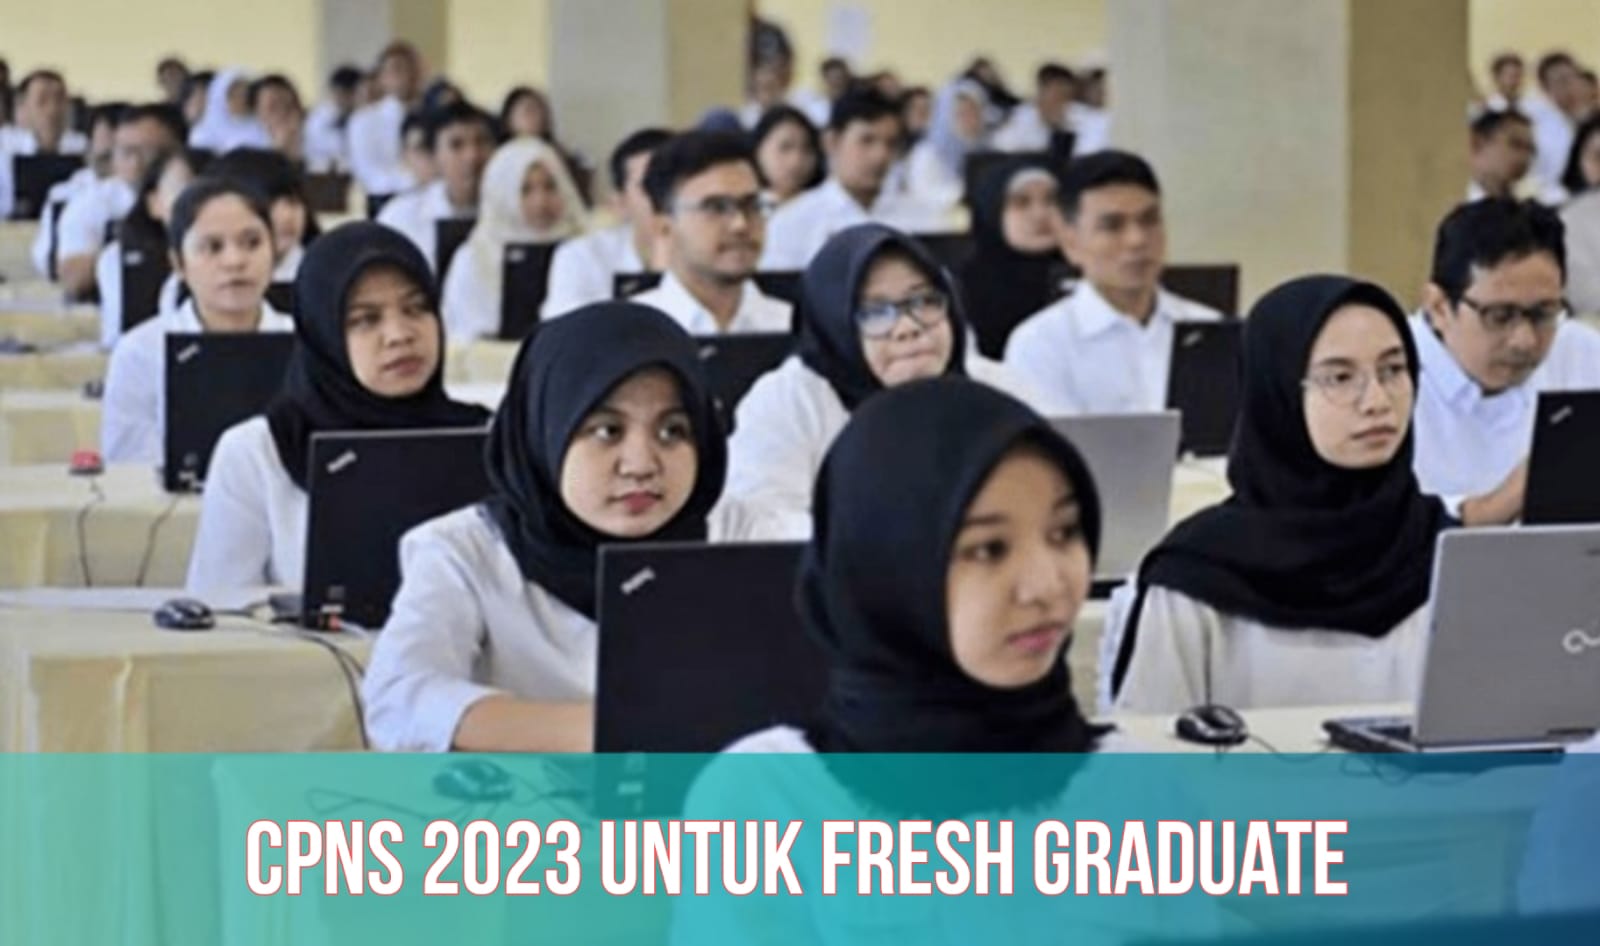 CPNS 2023 Buka Formasi untuk Fresh Graduate, Ini Detail Posisi dan Jurusan Prioritasnya